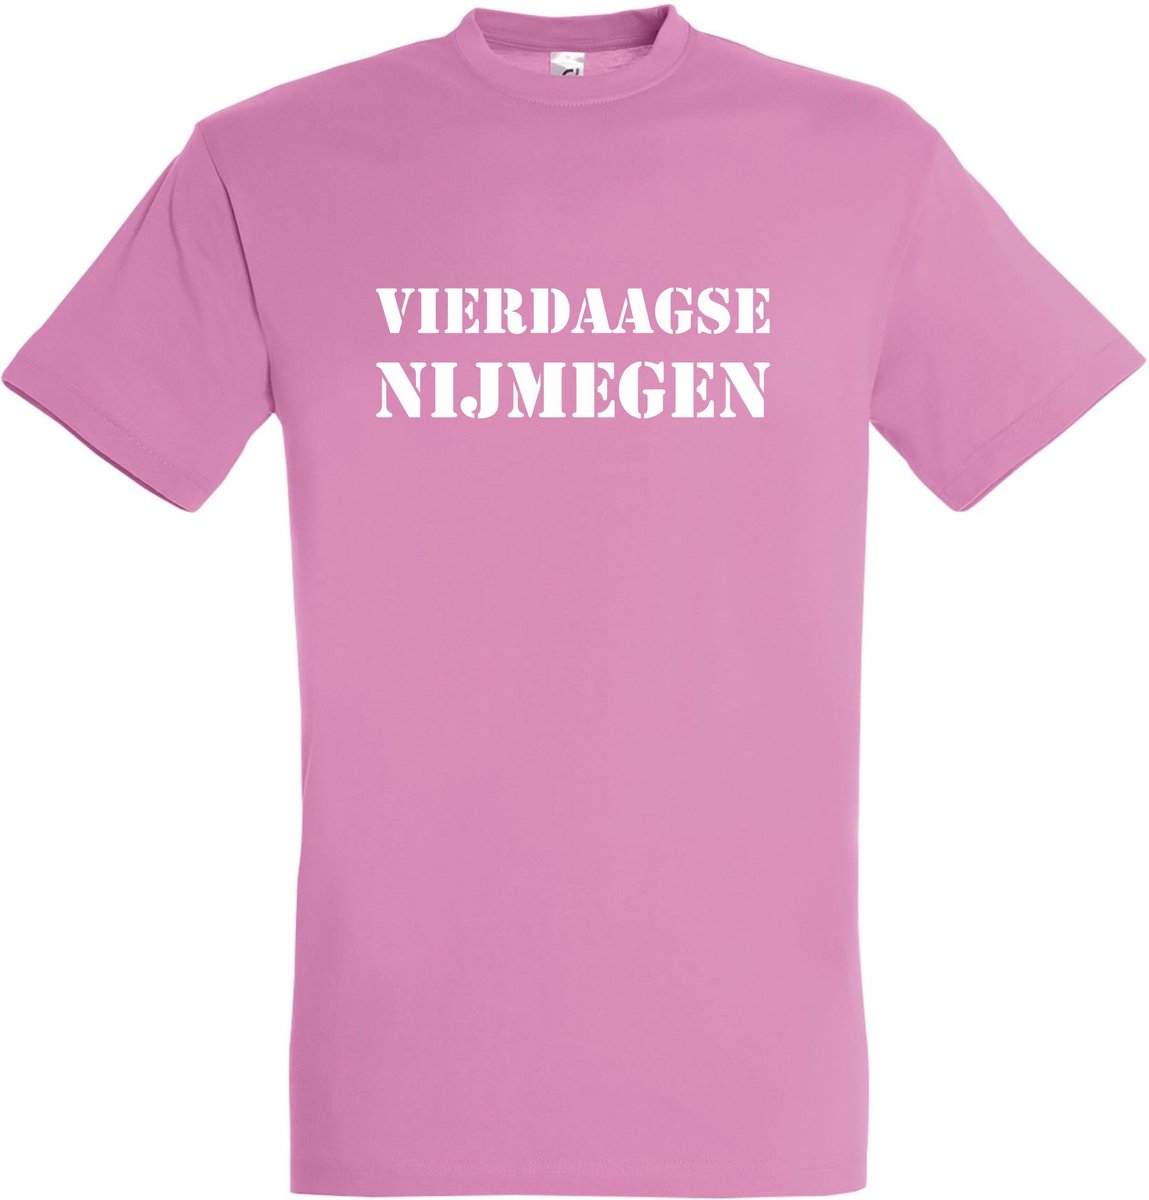 T-shirt Vierdaagse Nijmegen |Wandelvierdaagse | Vierdaagse Nijmegen | Roze woensdag | Roze | maat XL